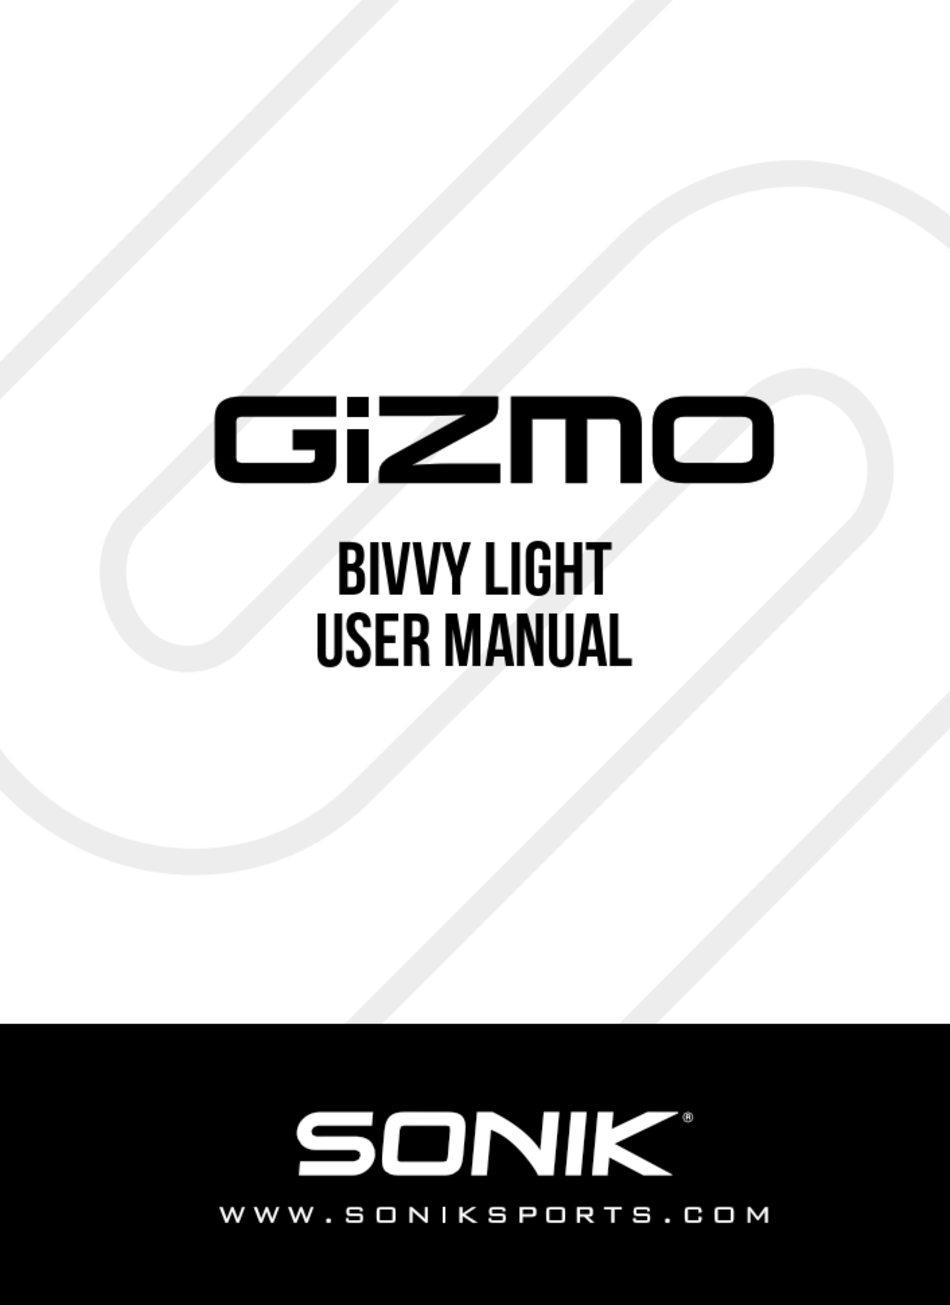 sonik-gizmo-user-manual-pdf-download-manualslib